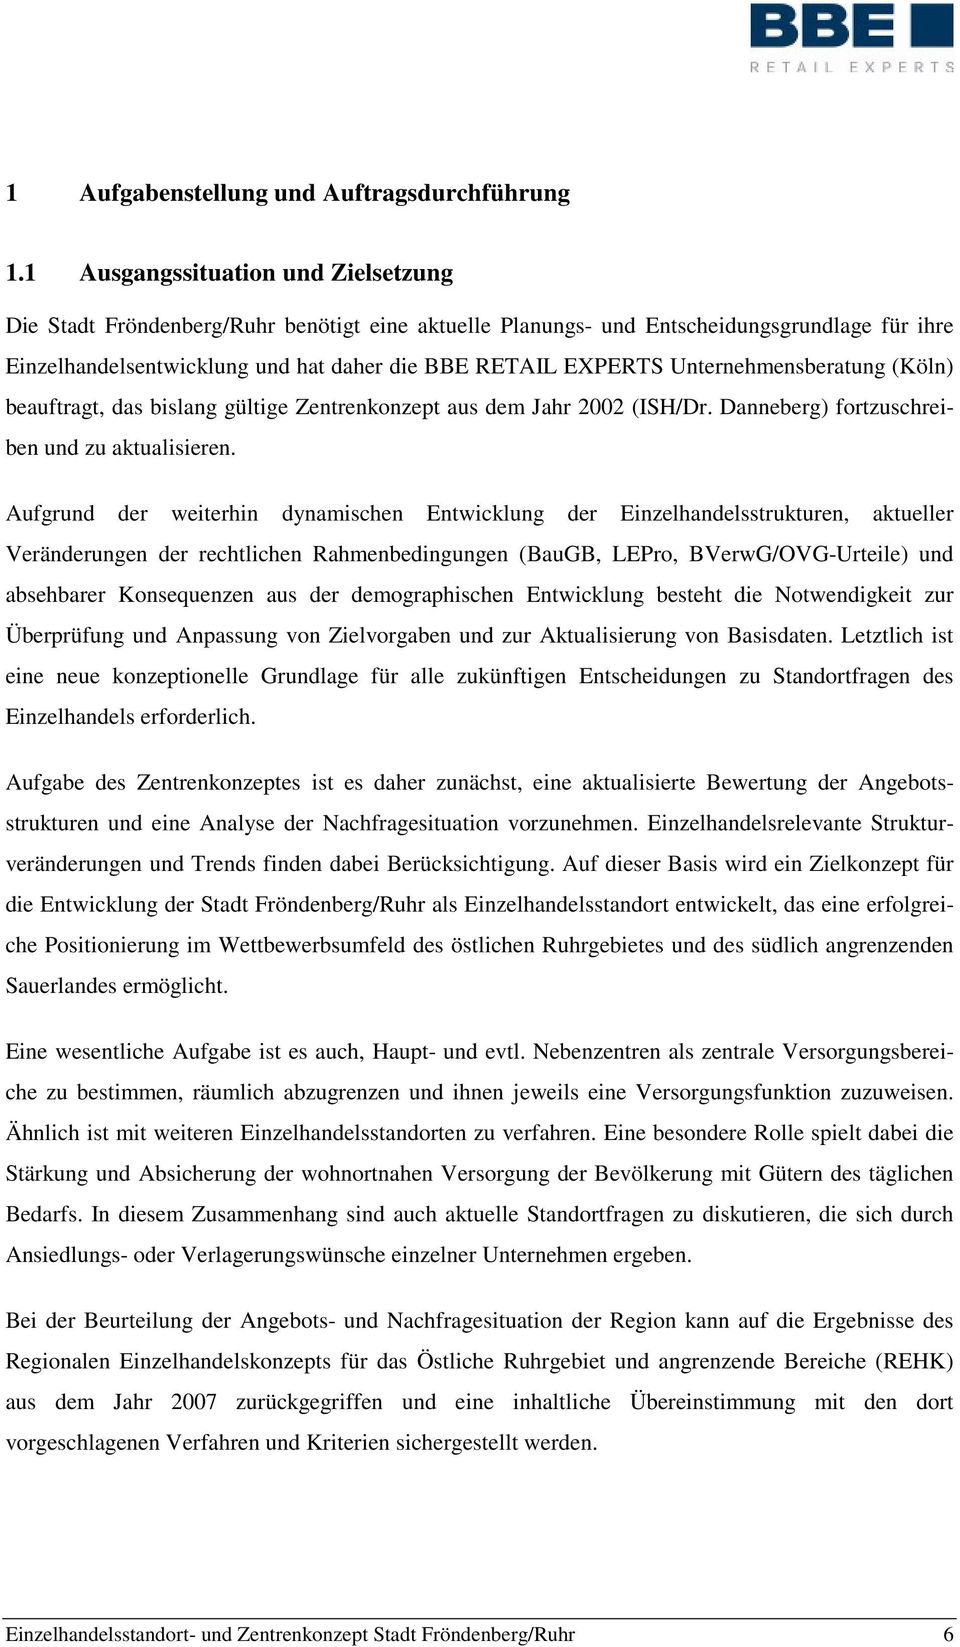 Unternehmensberatung (Köln) beauftragt, das bislang gültige Zentrenkonzept aus dem Jahr 2002 (ISH/Dr. Danneberg) fortzuschreiben und zu aktualisieren.